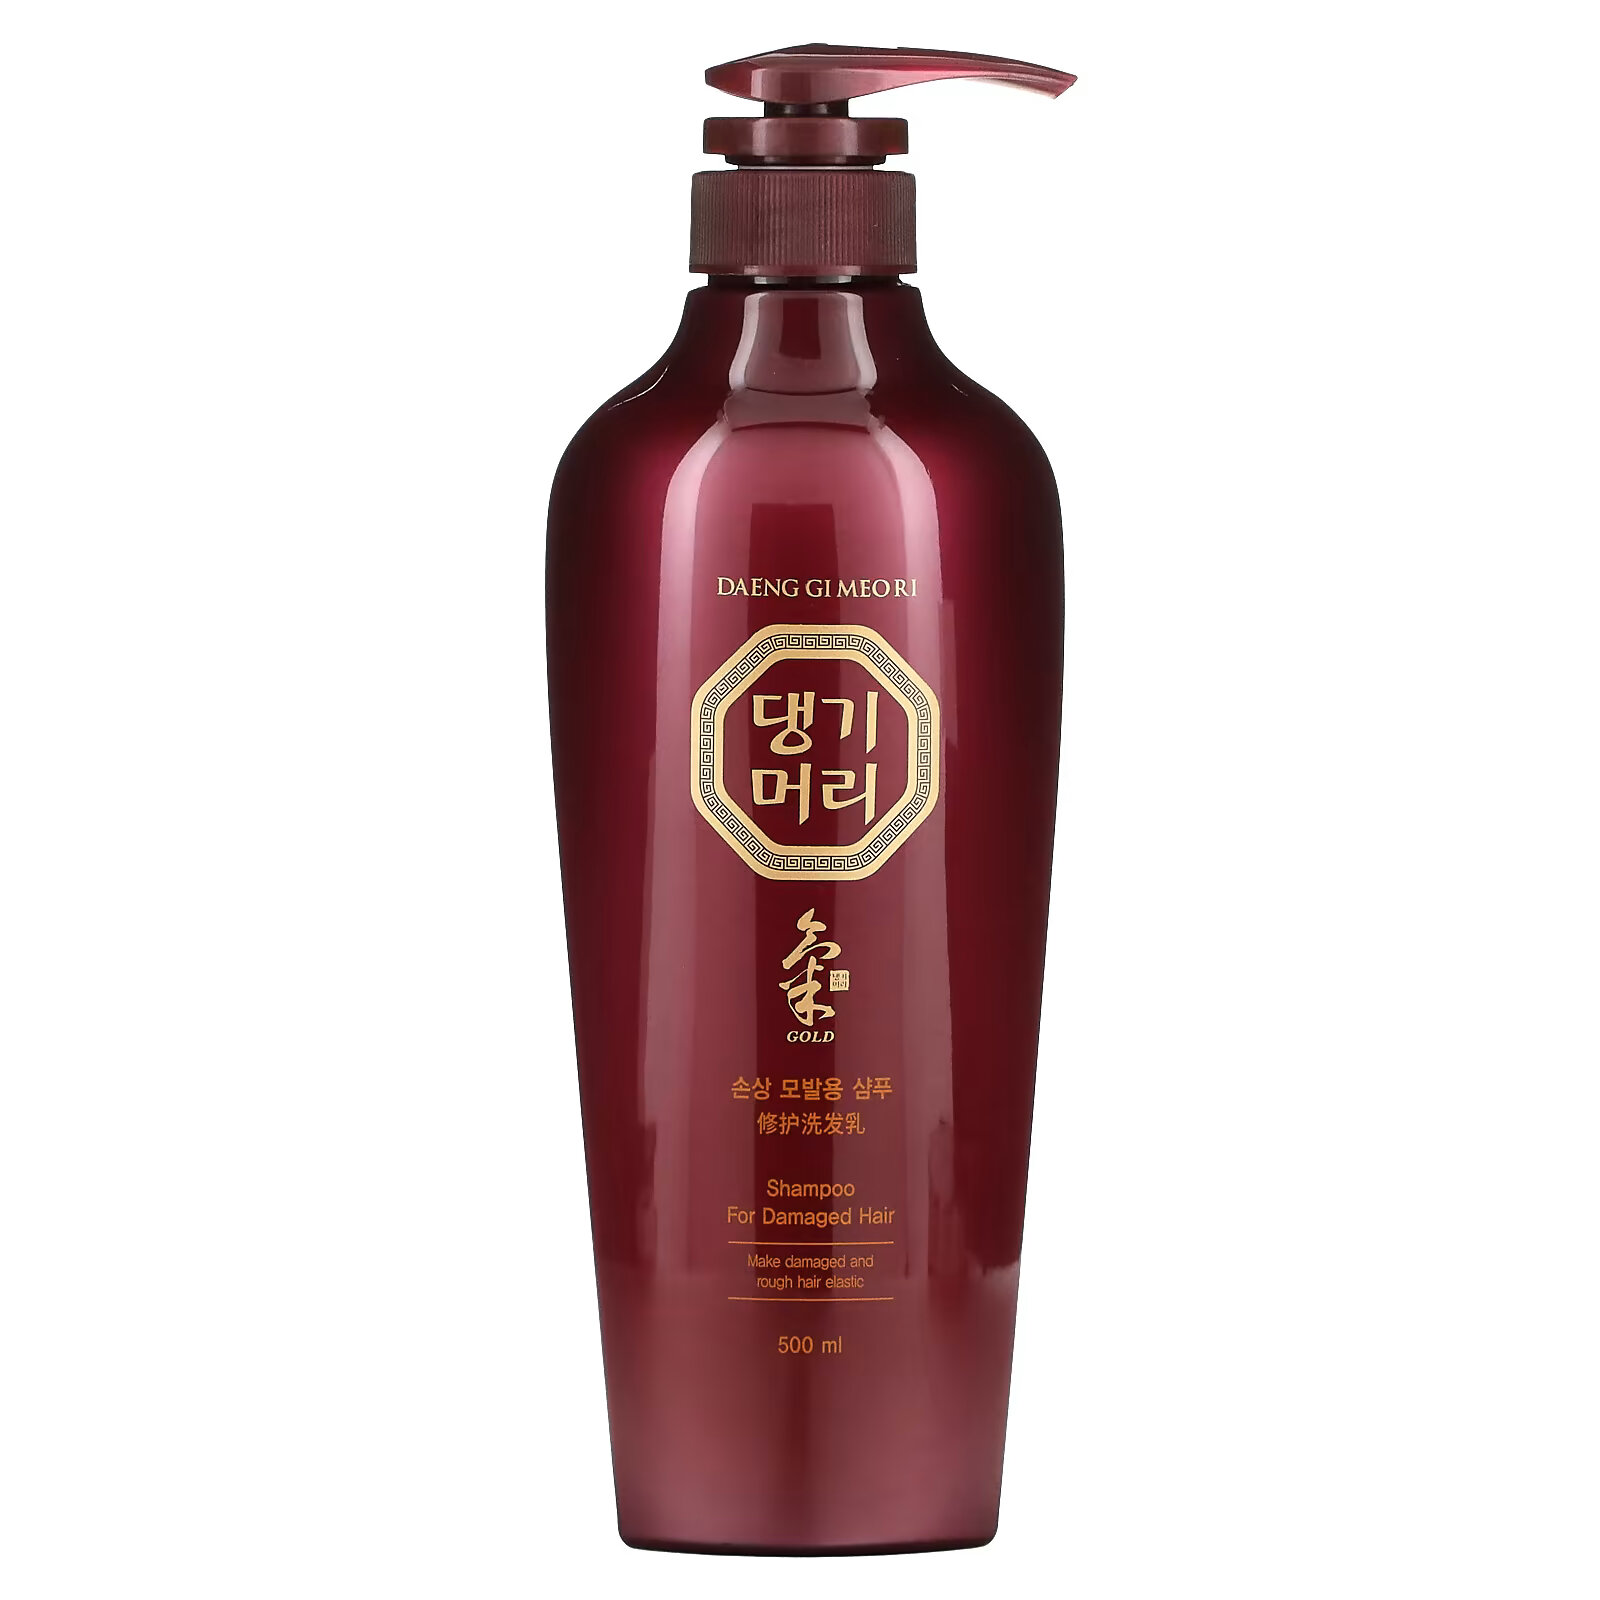 цена Doori Cosmetics, Daeng Gi Meo Ri, шампунь для поврежденных волос, 500 мл